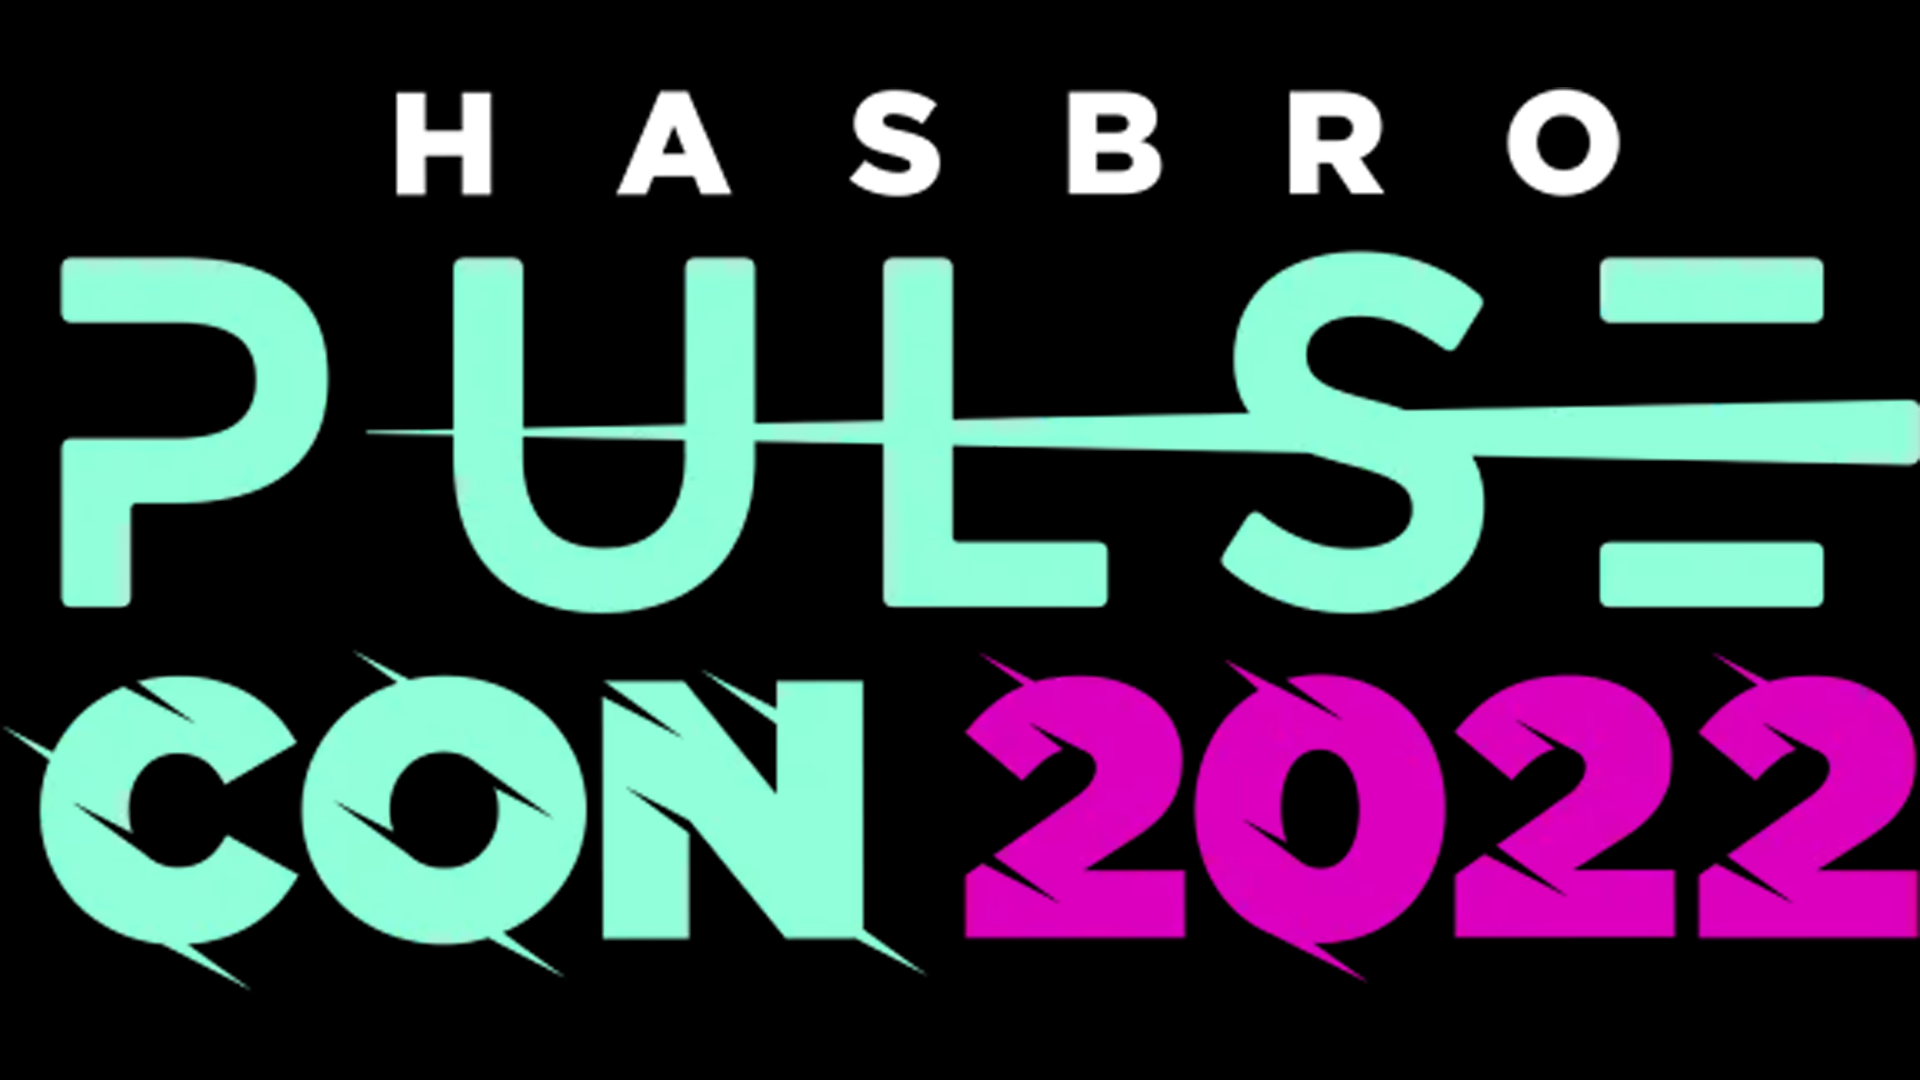 Hasbro Pulse Con 2022